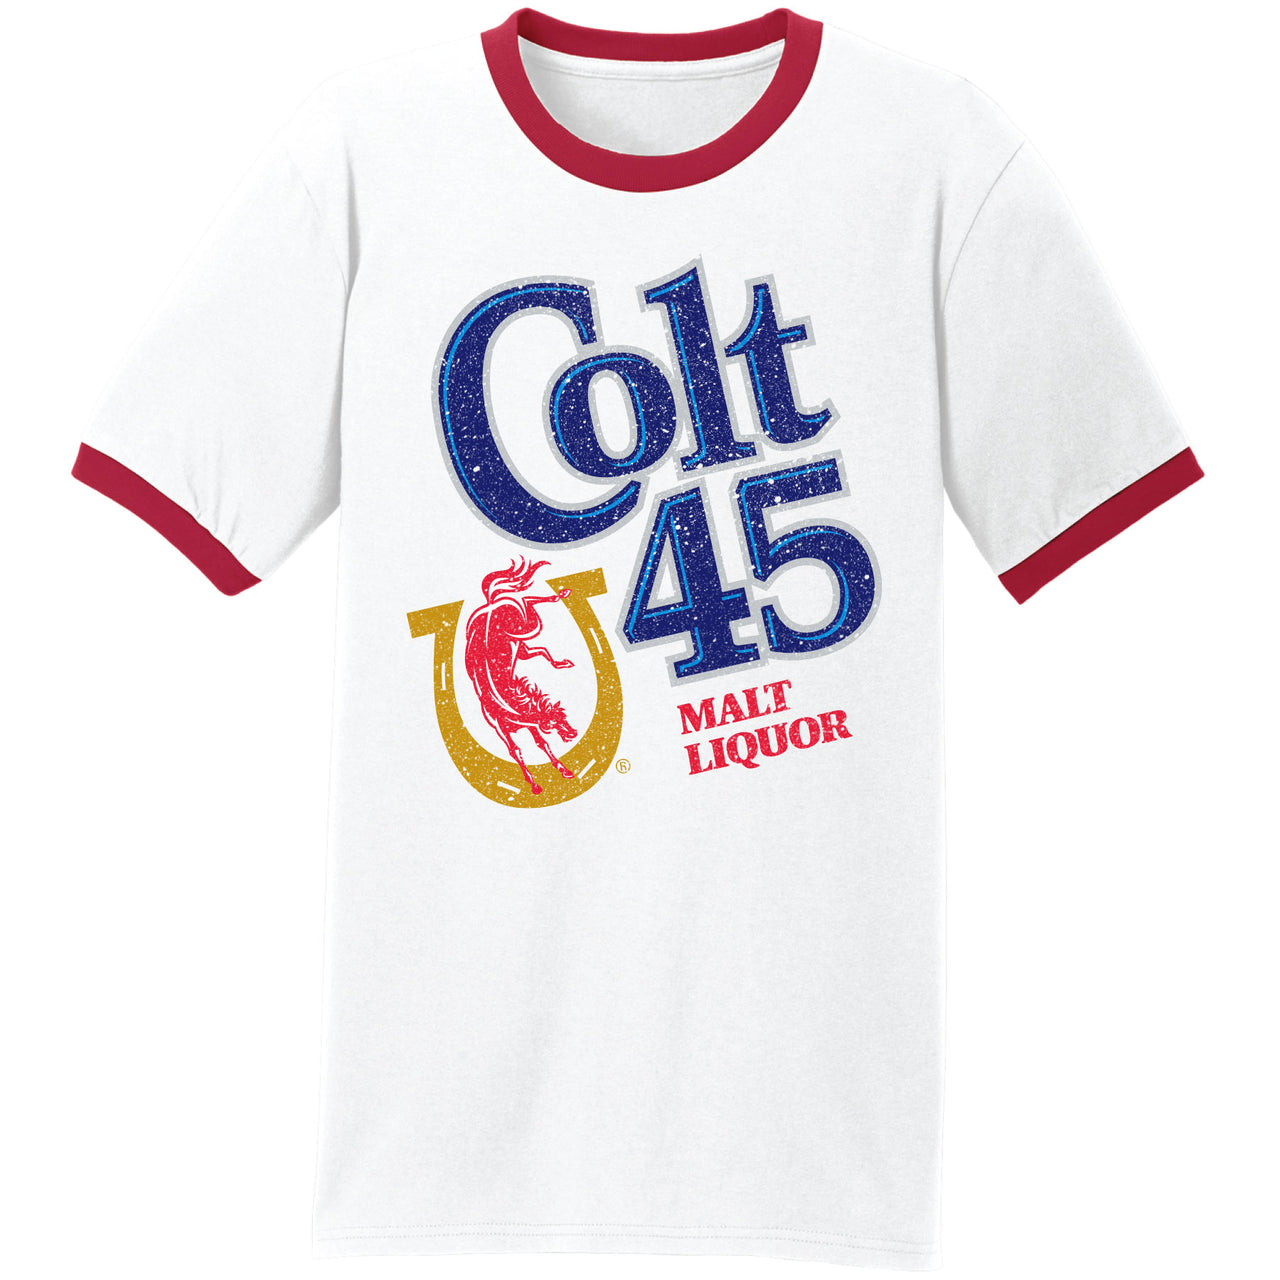 Colt 45 - Malt Liquor Ringer T-shirt